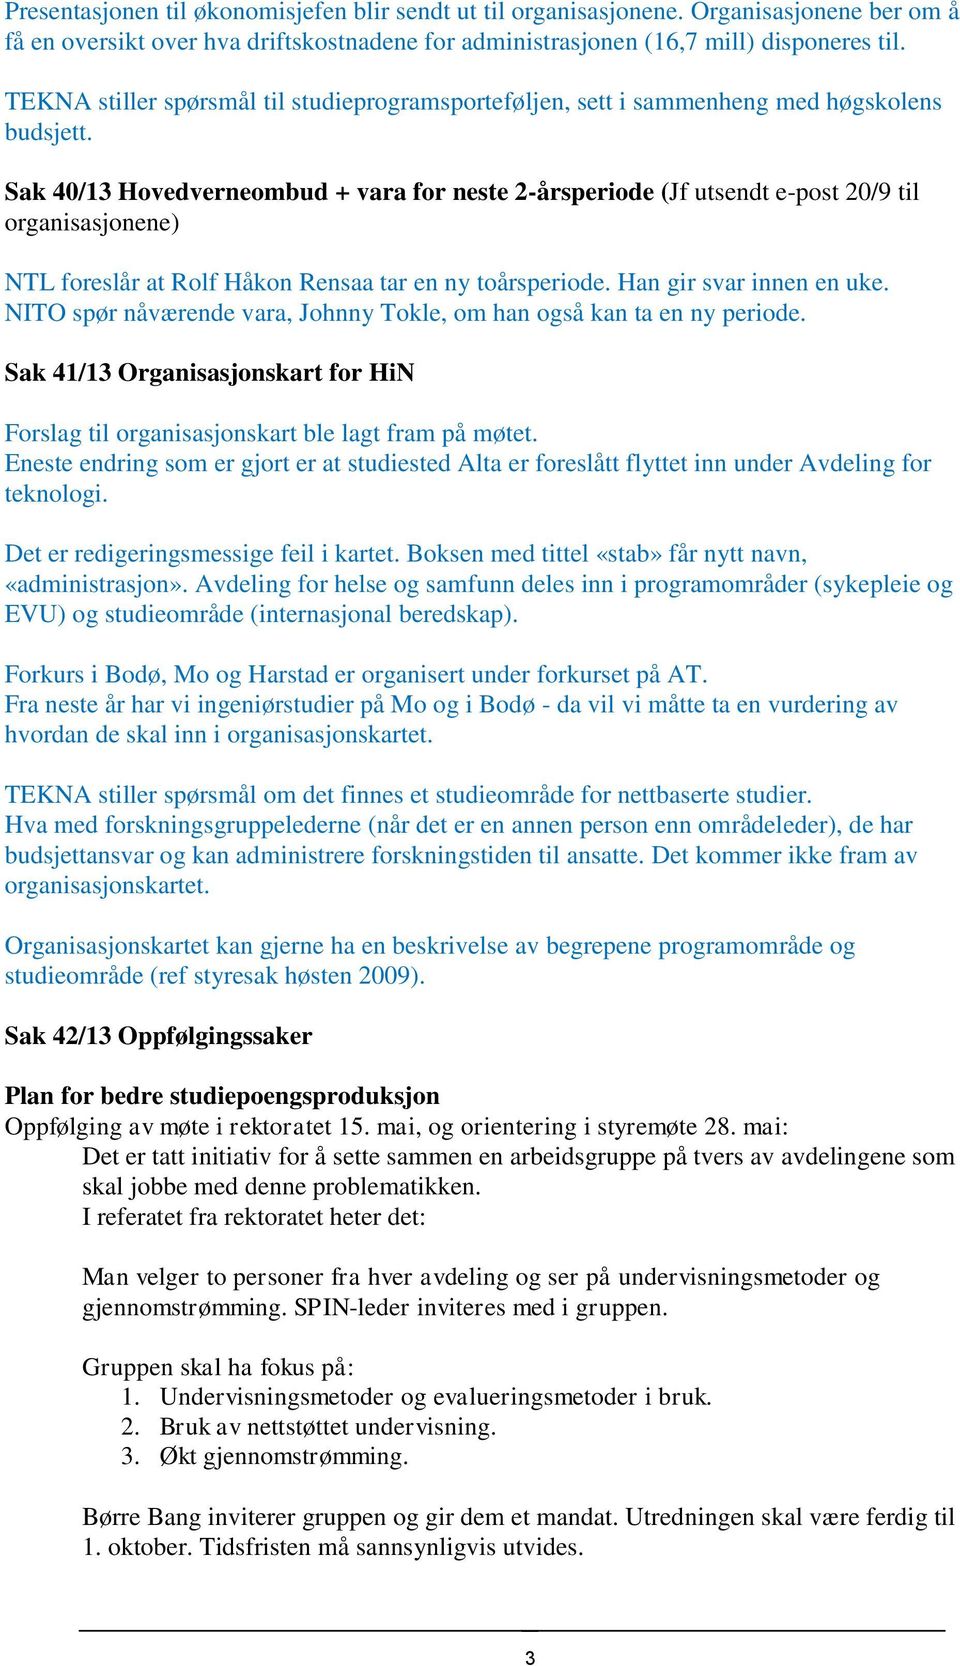 Sak 40/13 Hovedverneombud + vara for neste 2-årsperiode (Jf utsendt e-post 20/9 til organisasjonene) NTL foreslår at Rolf Håkon Rensaa tar en ny toårsperiode. Han gir svar innen en uke.